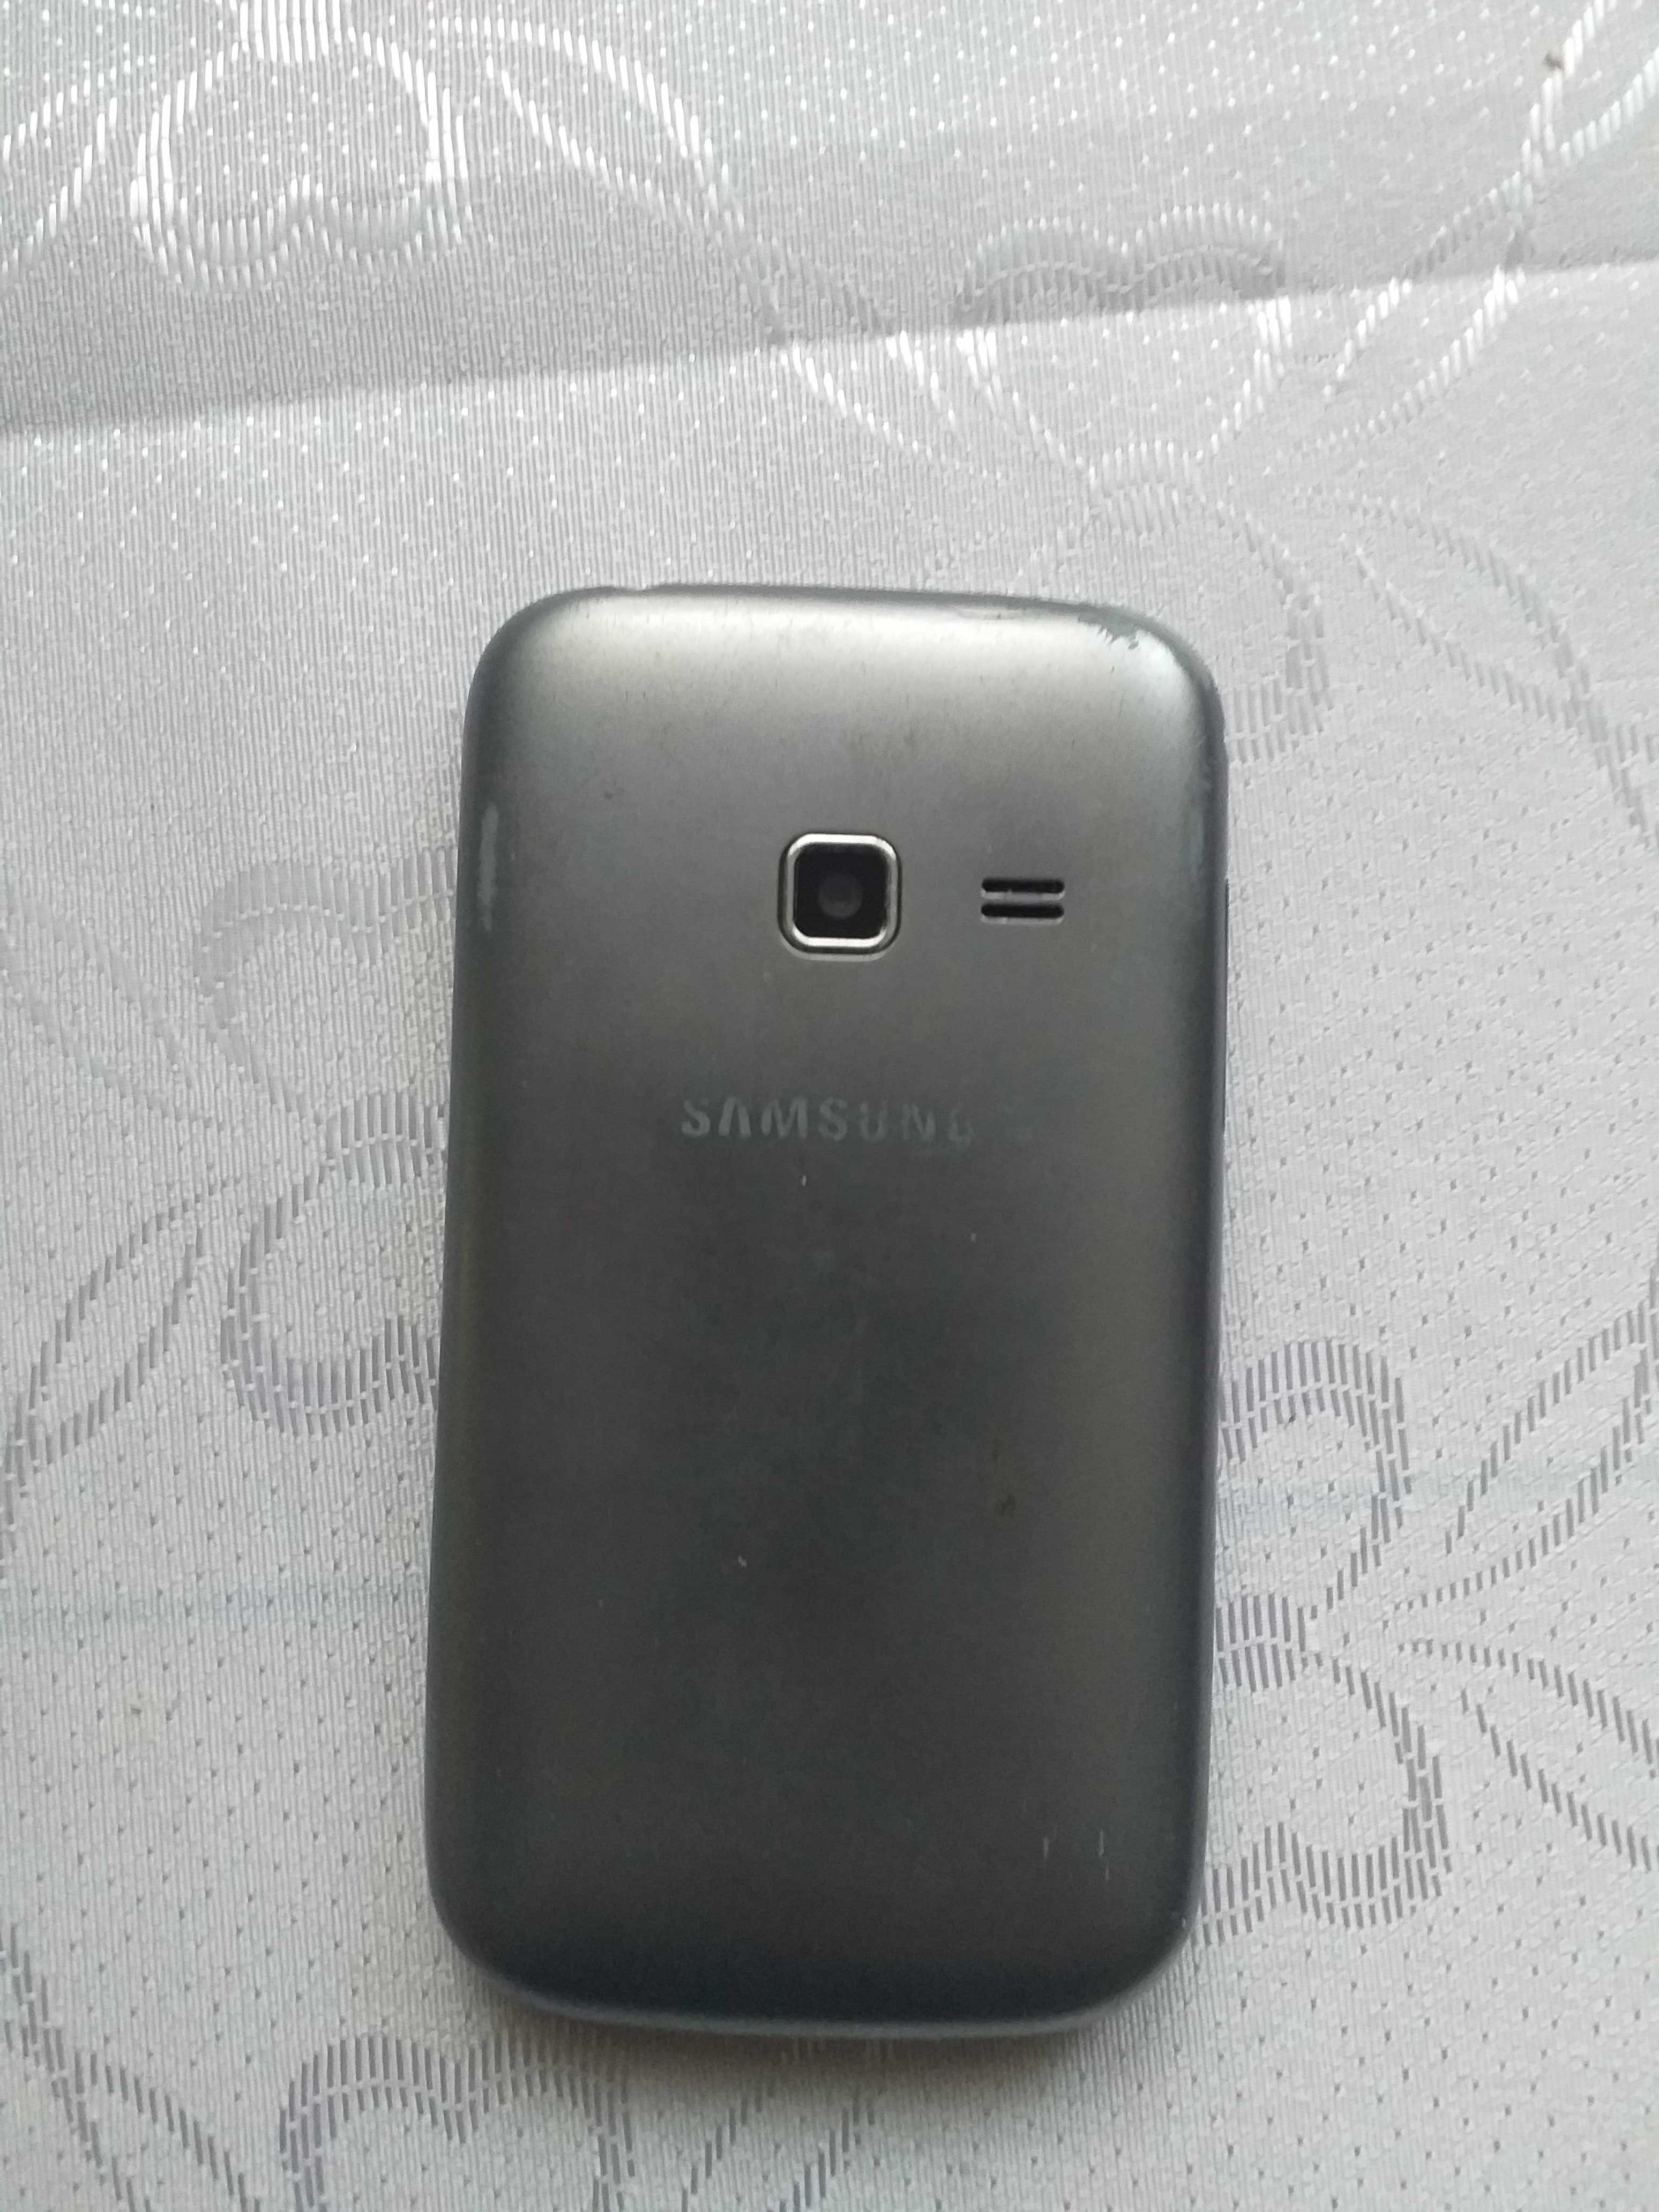 Vand doua telefoane Samsung